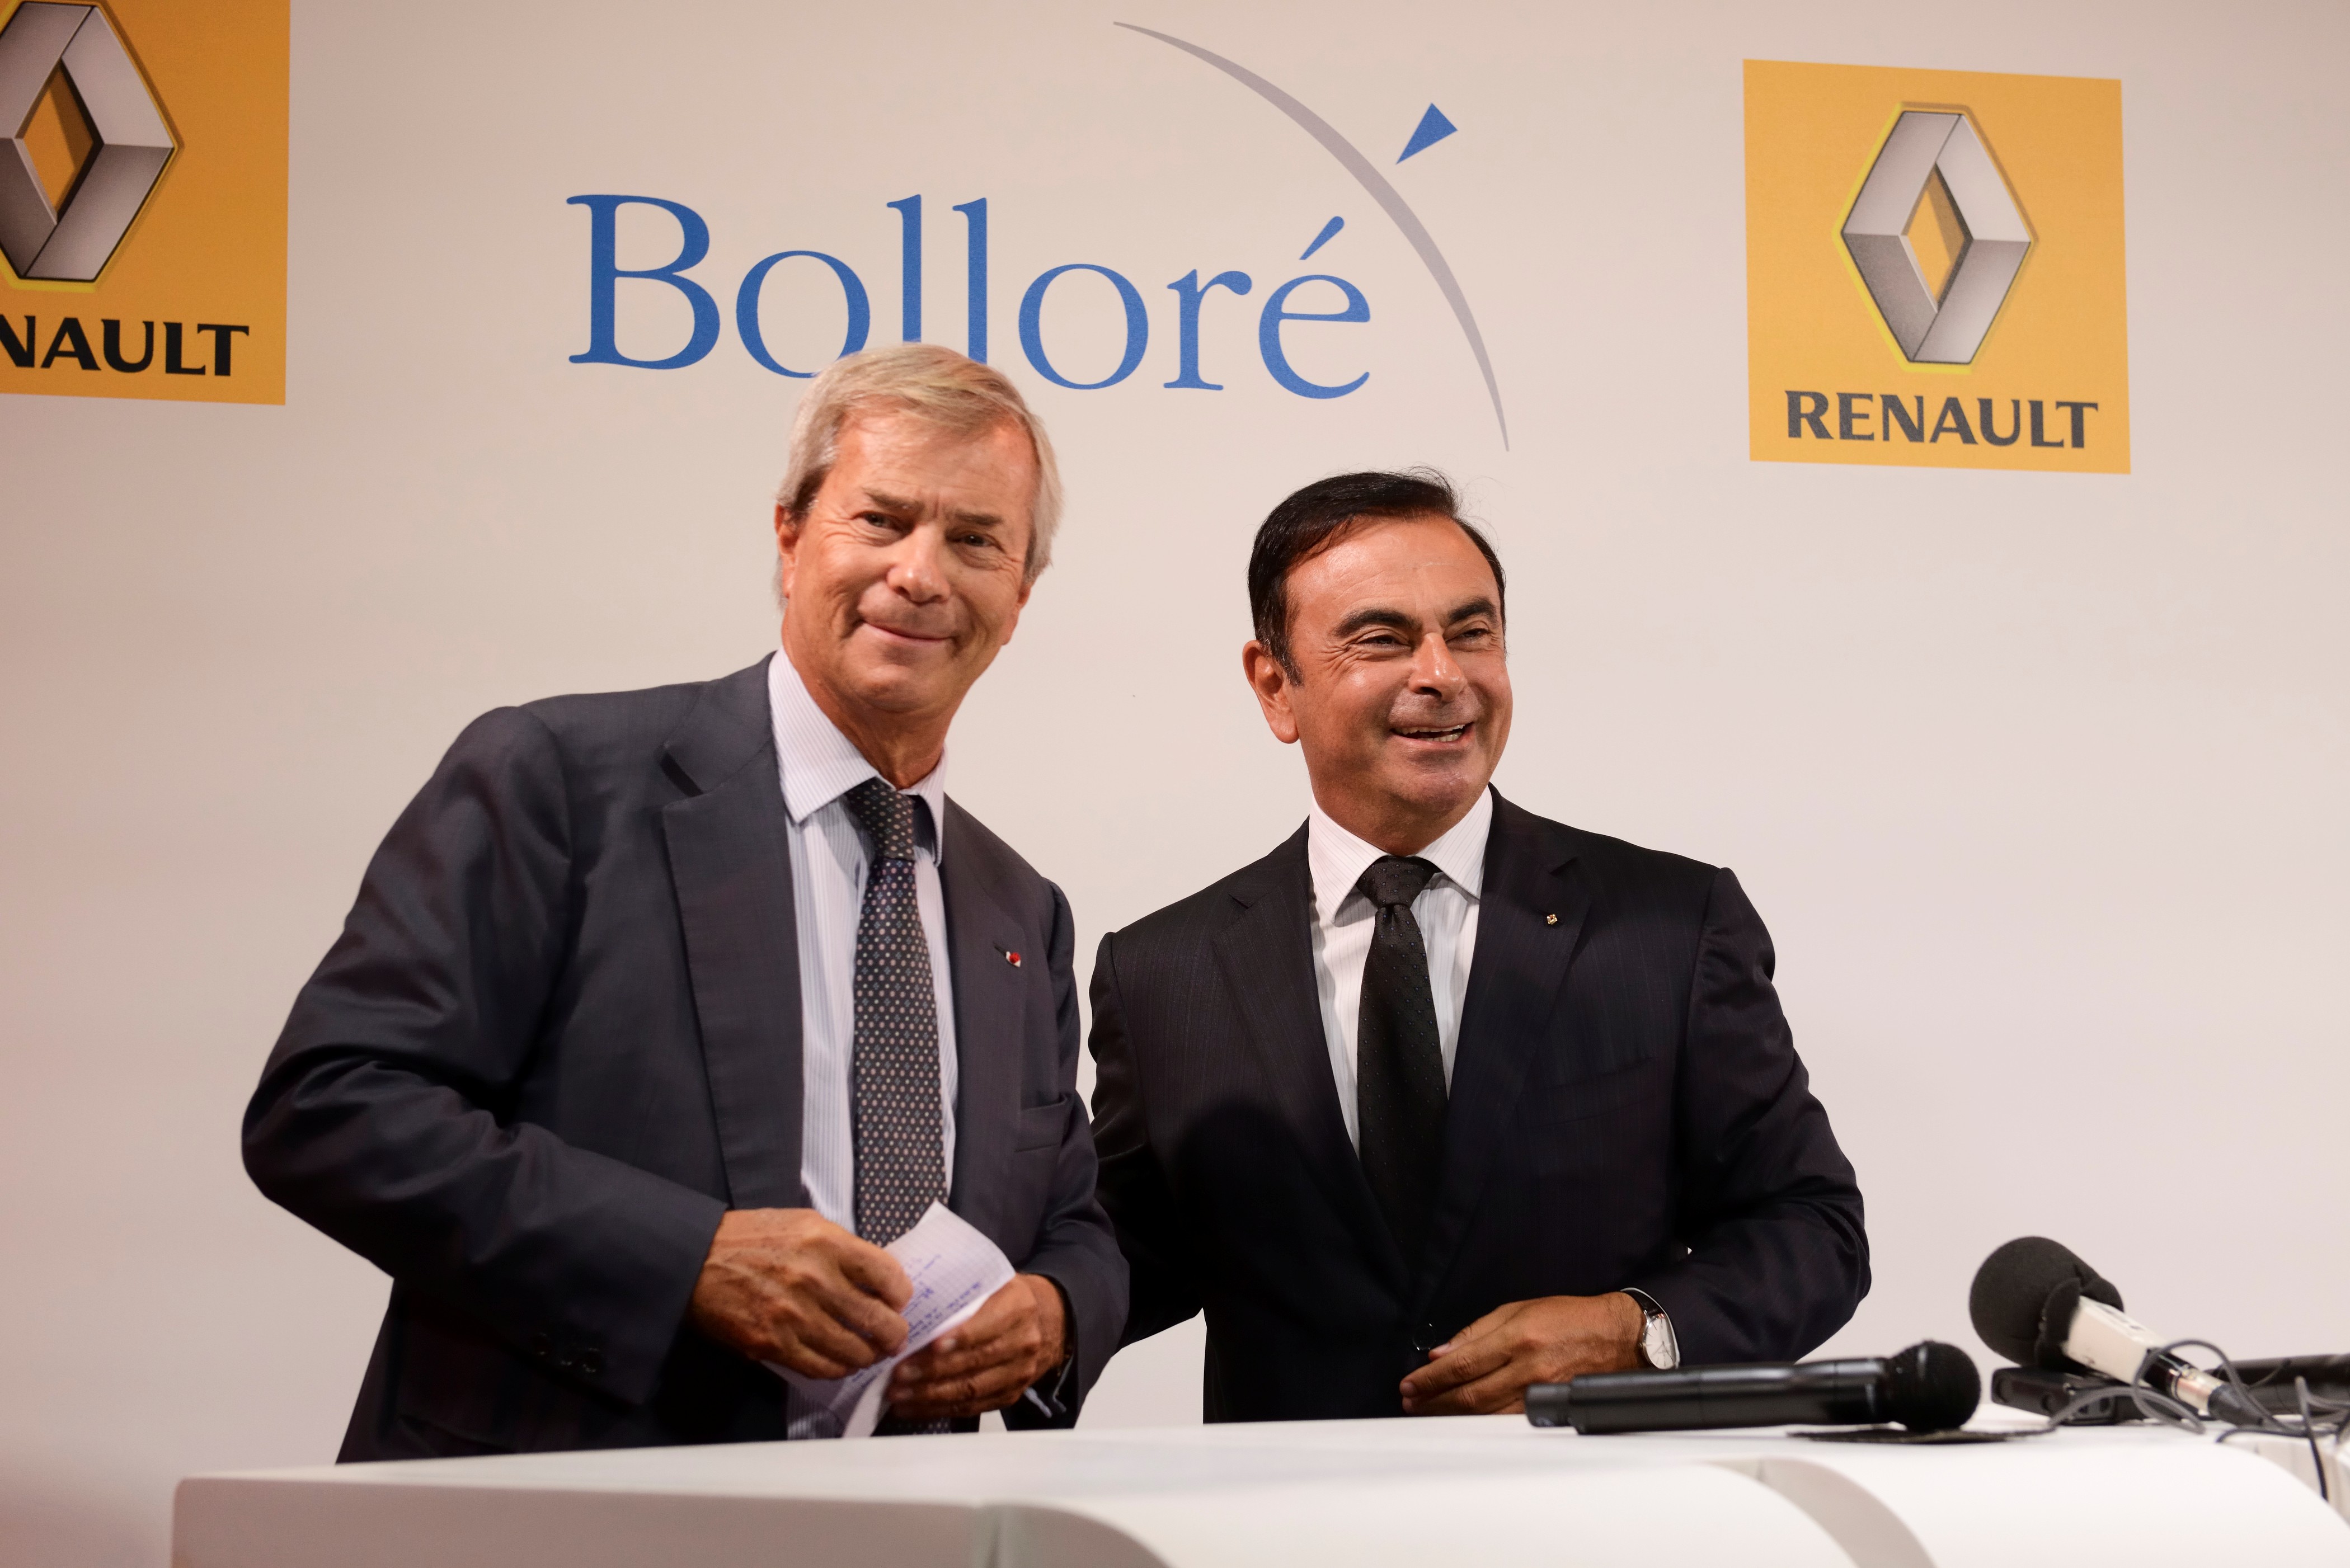  Renault e Bolloré formano una partnership per i veicoli elettrici